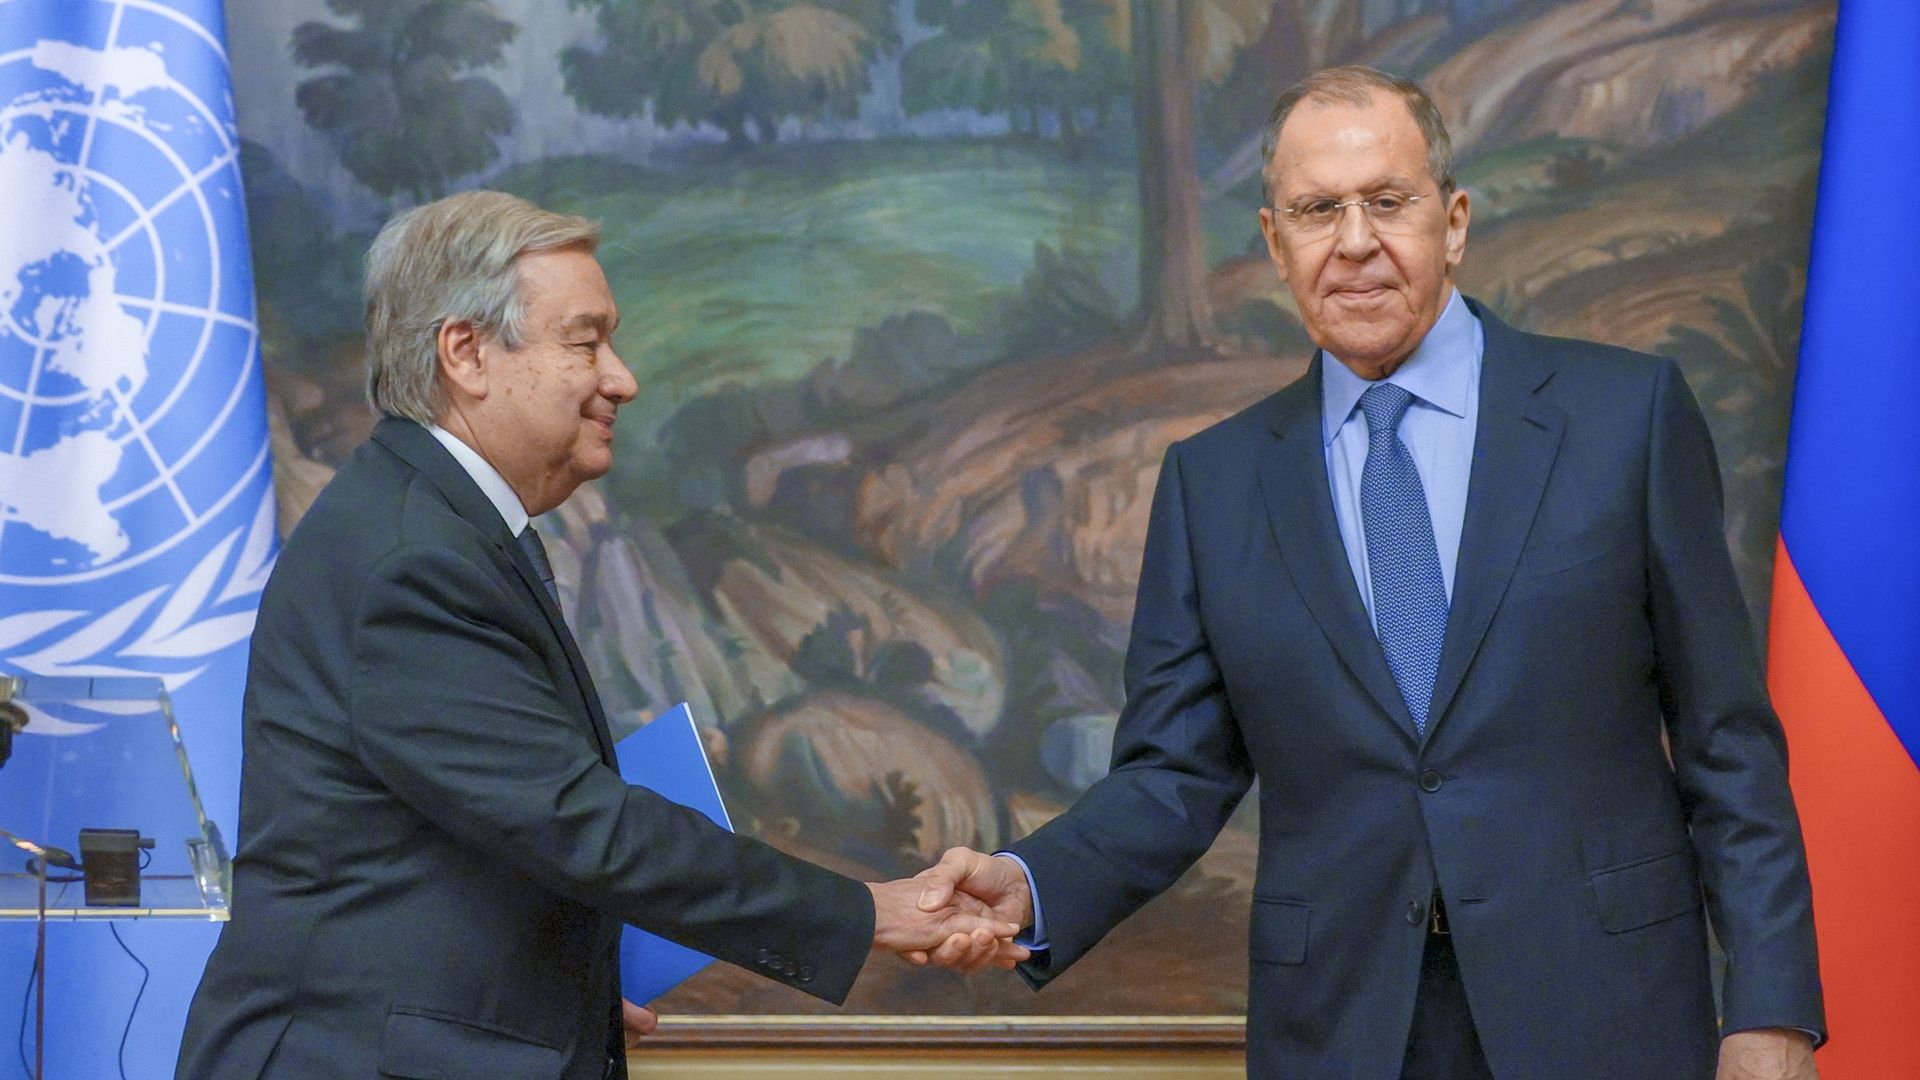 Le Ministre russe des Affaires étrangères Sergueï Lavrov (droite) et le Secrétaire général des Nations Unies Antonio Guterres (gauche) tiennent une conférence de presse conjointe après leur rencontre à Moscou, Russie. 